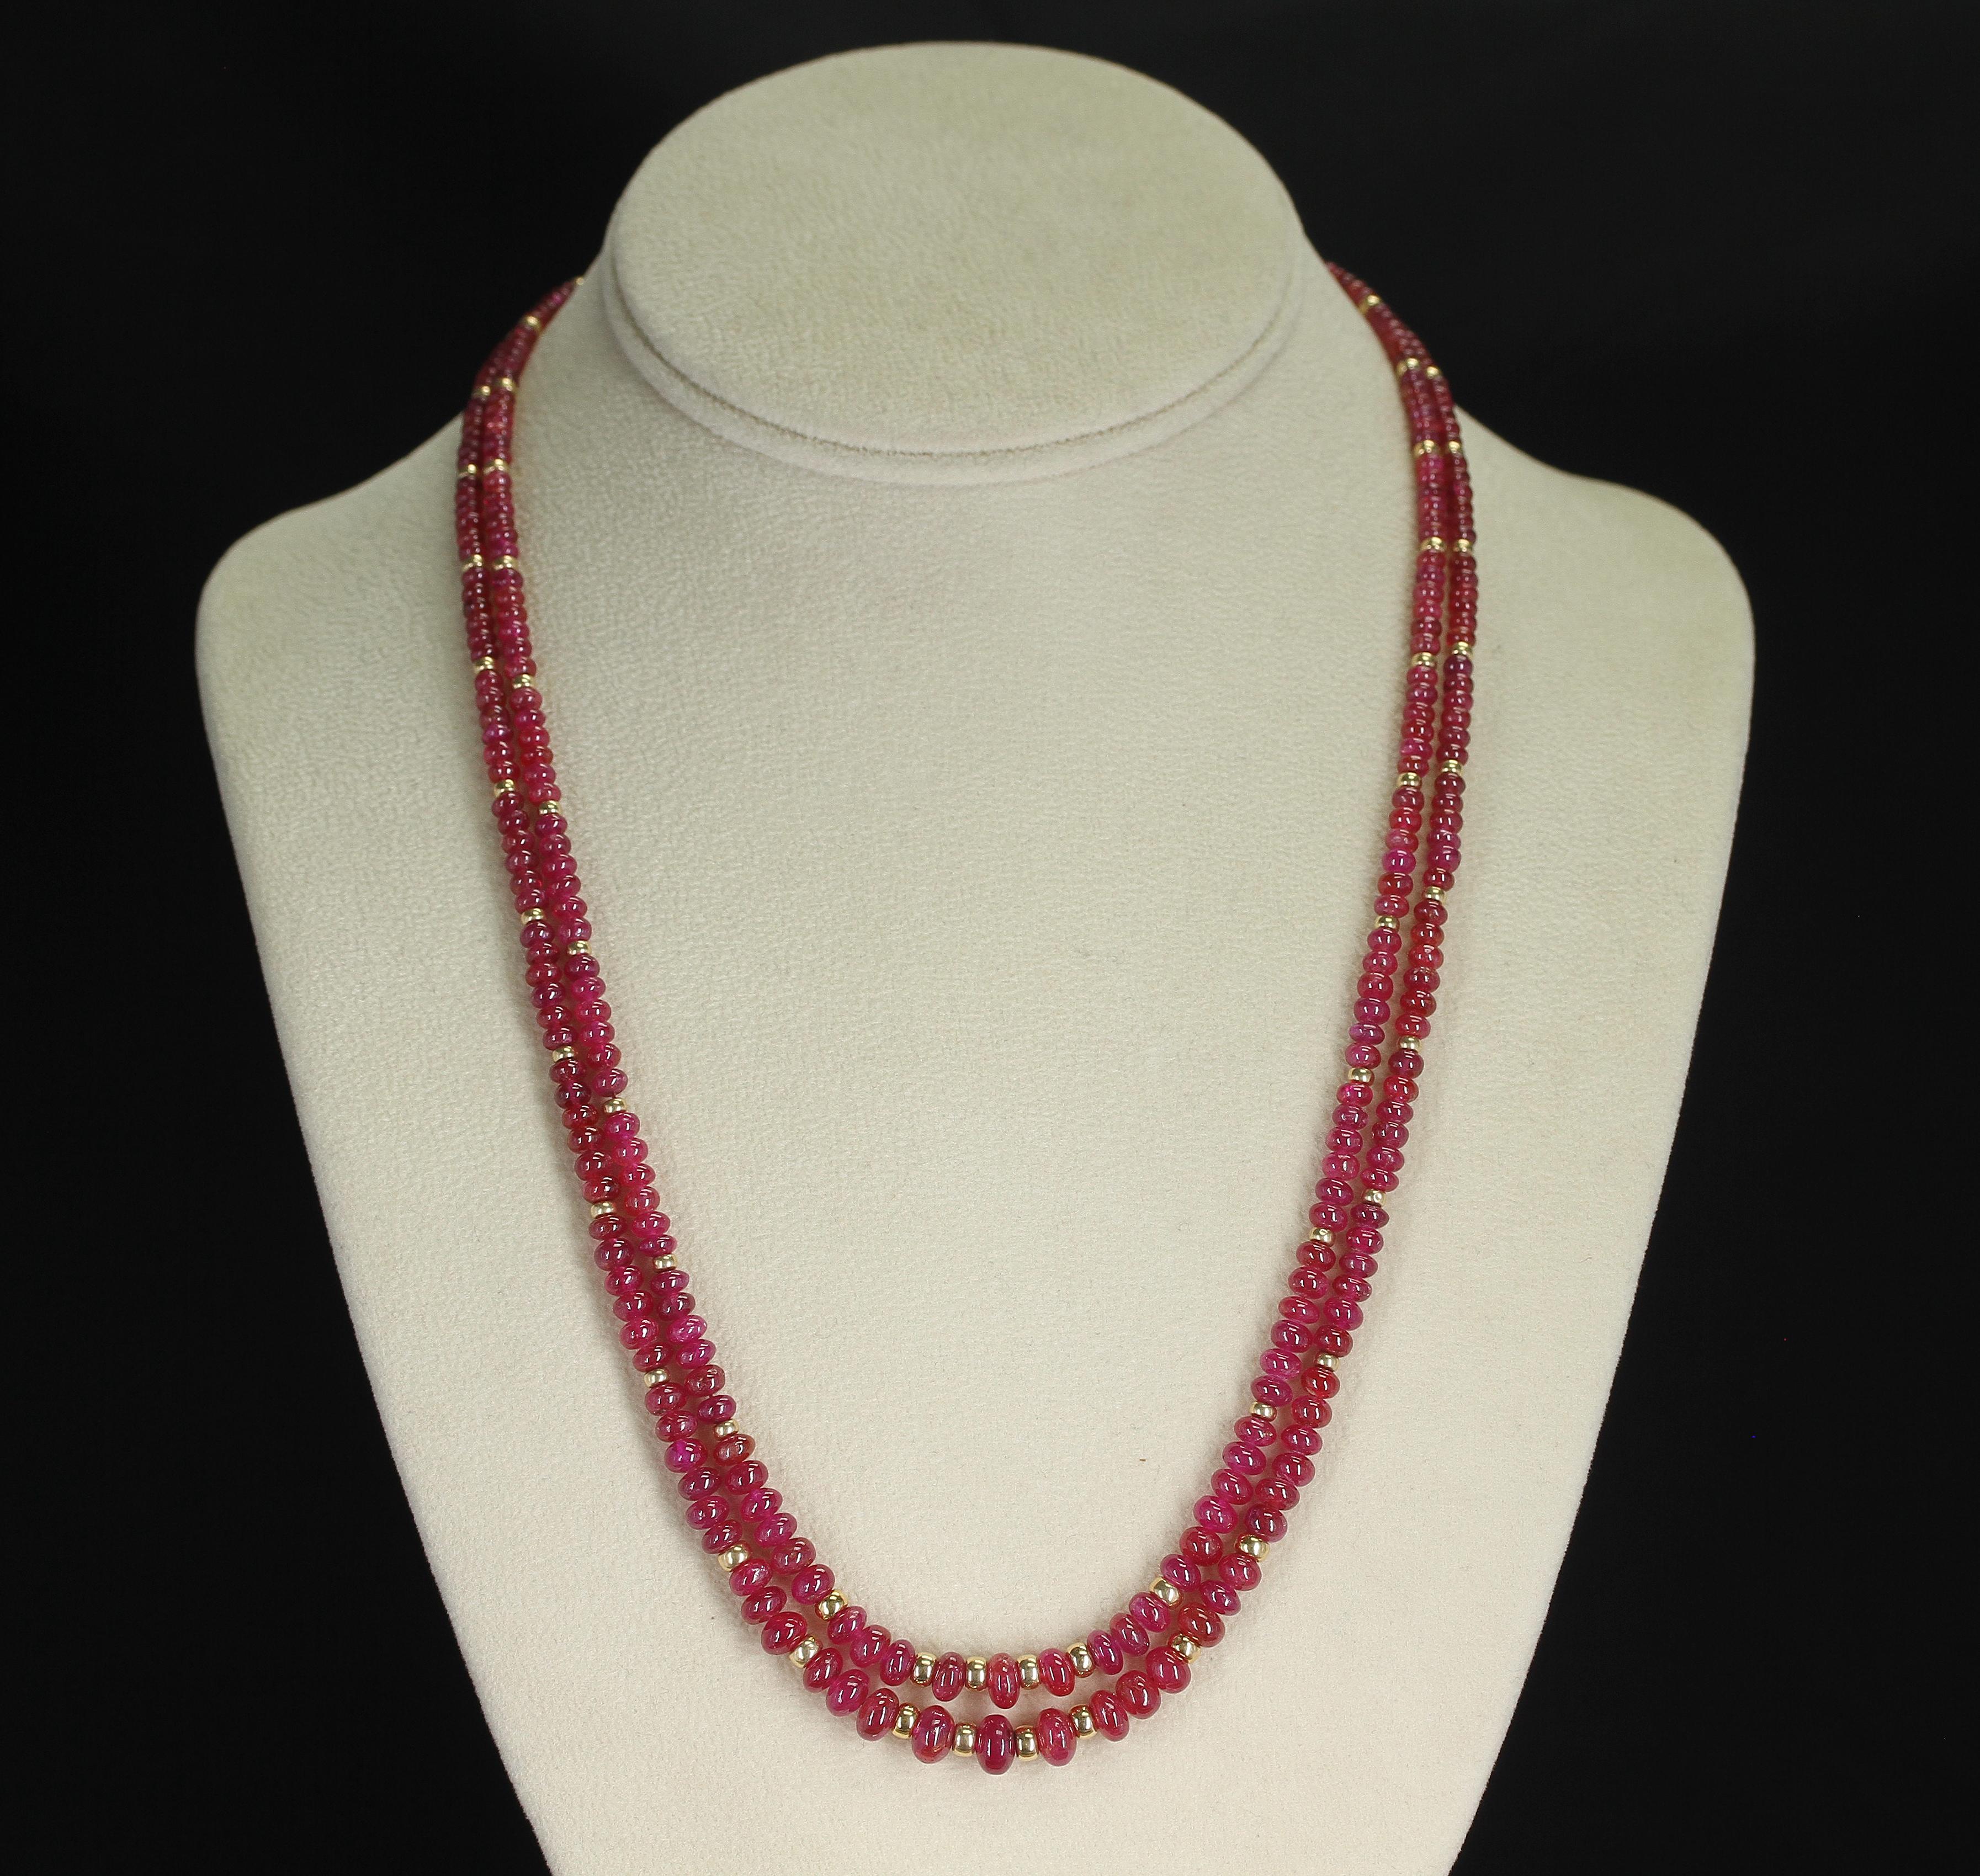 Eine Halskette, bestehend aus zwei Strängen mit glatten Rubinperlen und 14K Goldperlen. Die Perlen reichen von 2,5MM bis 7MM und wiegen insgesamt 184 Karat. Die Schließe ist aus 14K Gelbgold.